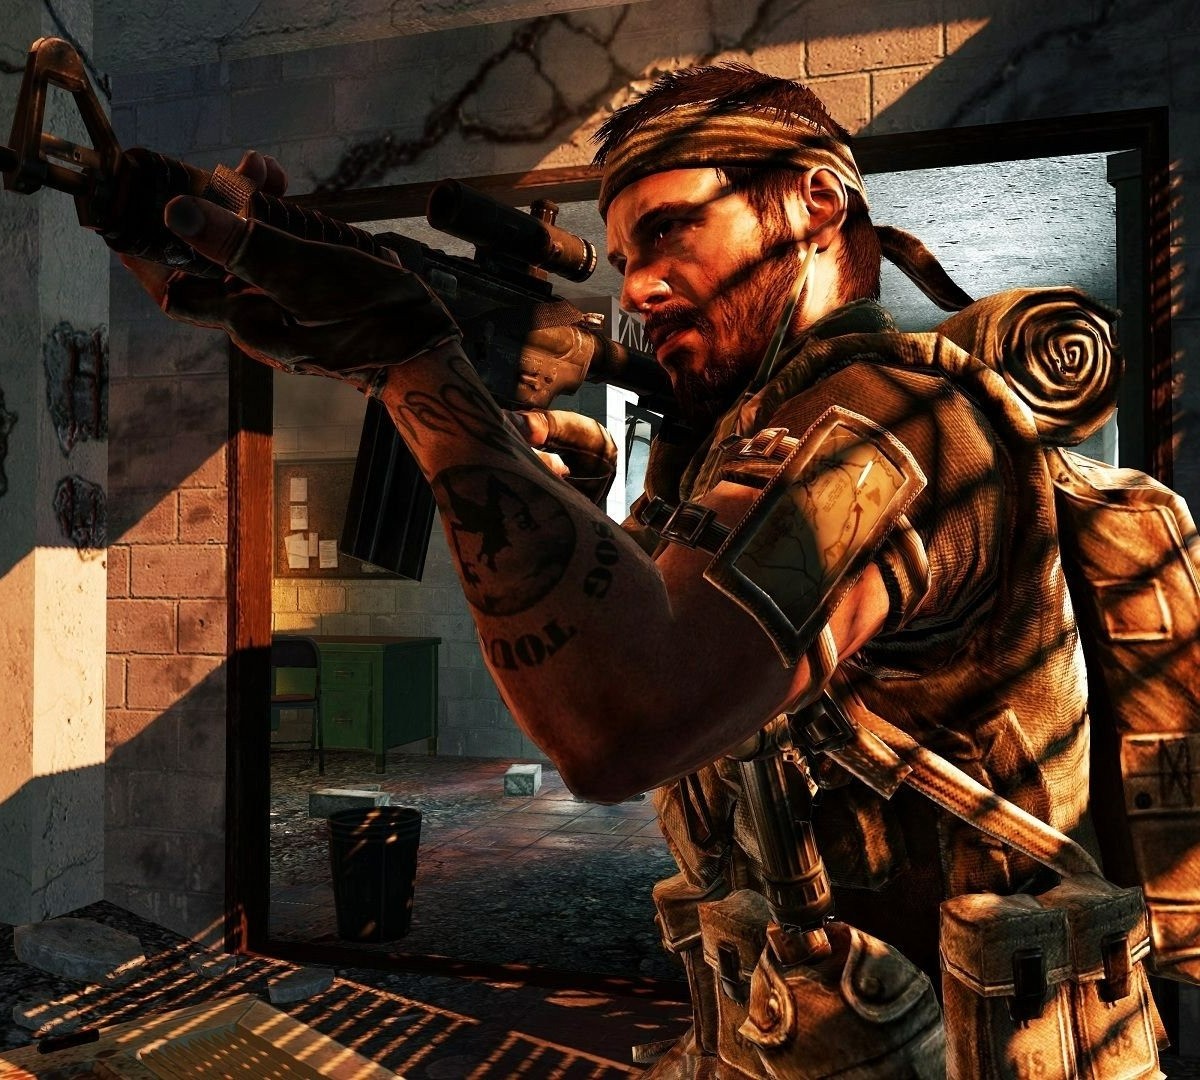 Jogos de Call of Duty chegam ao Game Pass em 2024